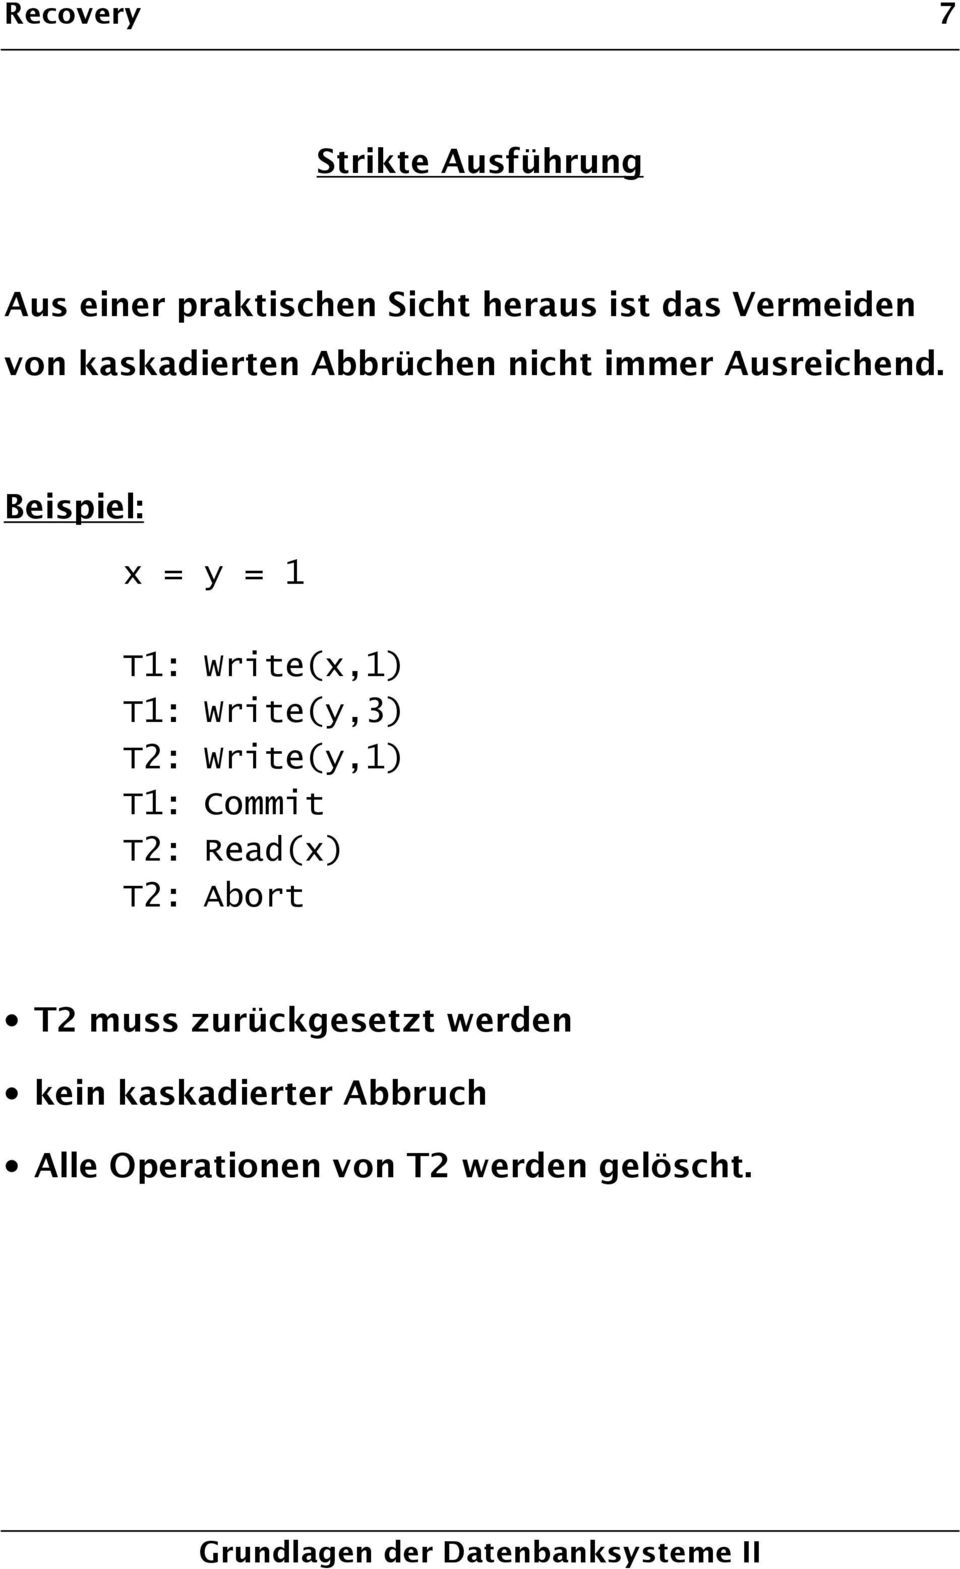 Beispiel: x = y = 1 T1: Write(x,1) T1: Write(y,3) T2: Write(y,1) T1: Commit T2: